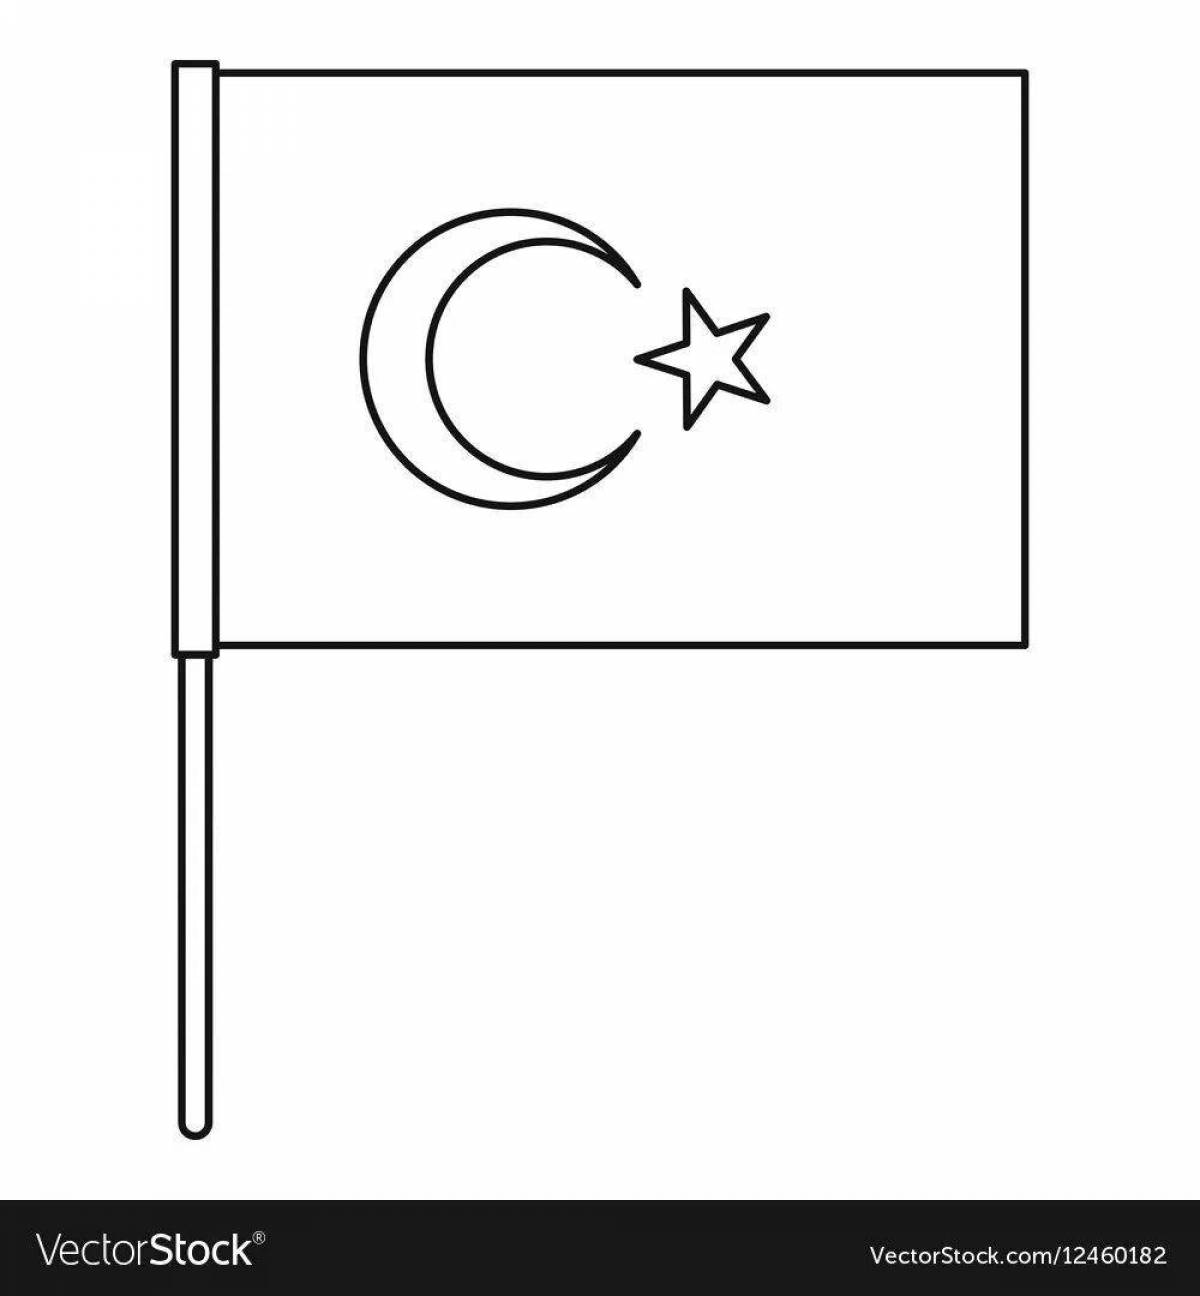 Turkish flag #8